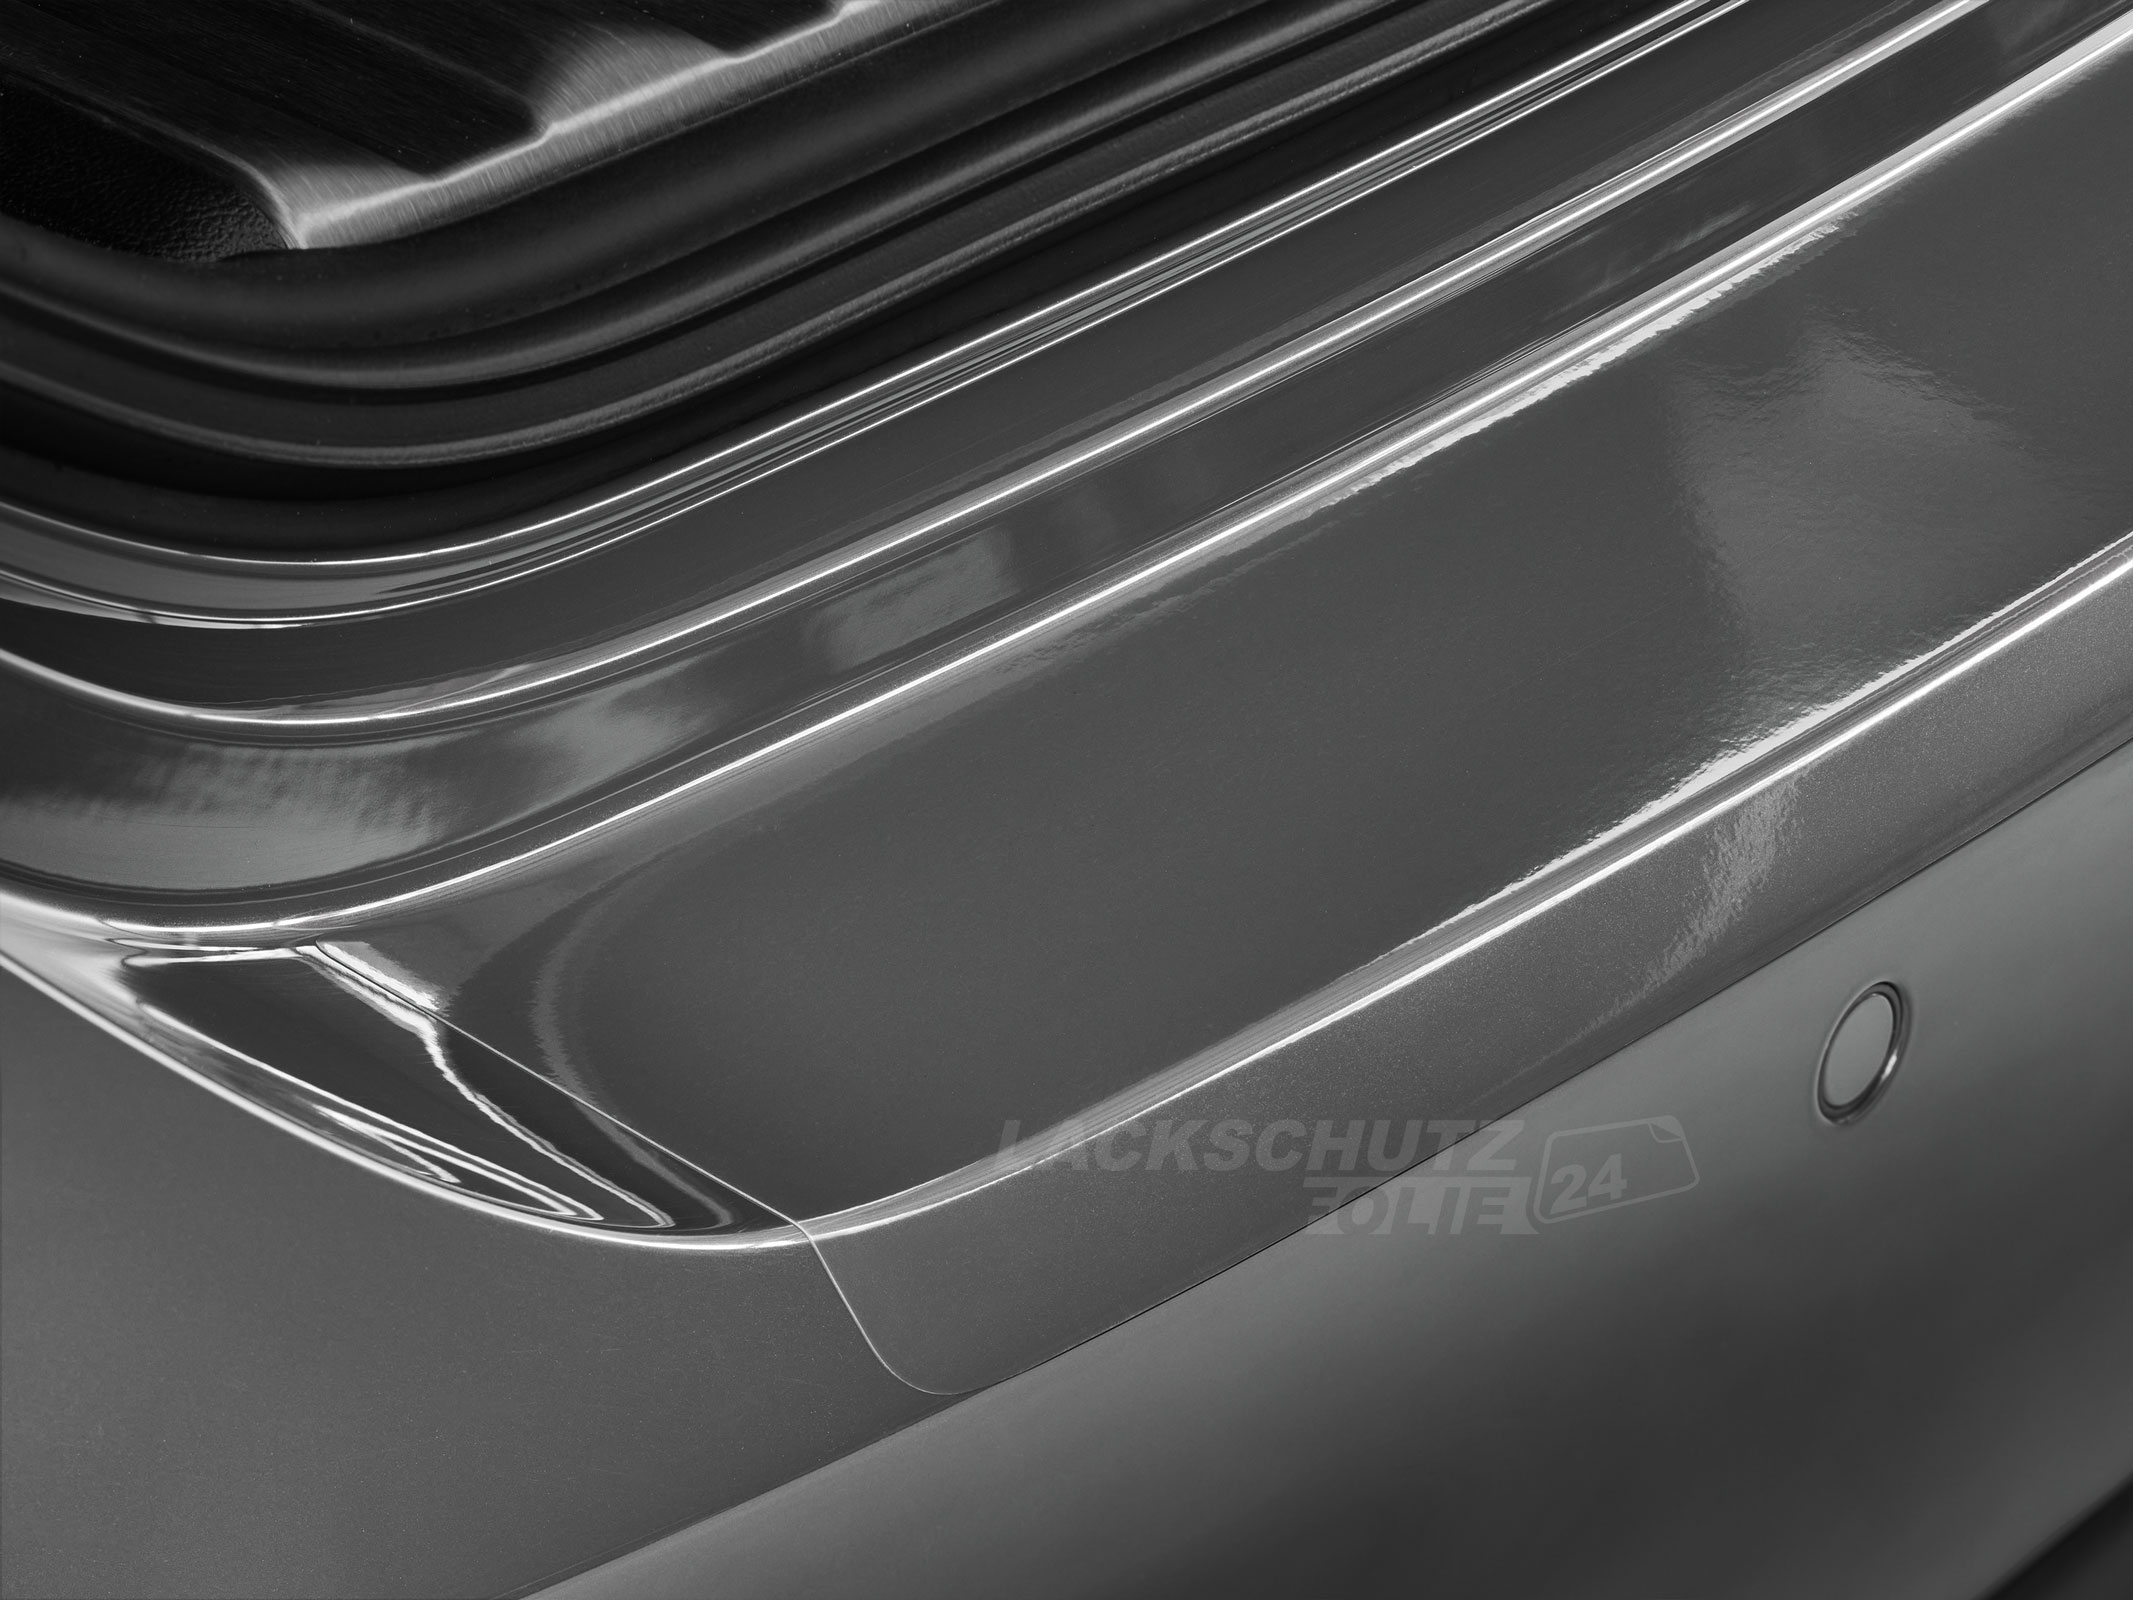 Ladekantenschutzfolie - Transparent Glatt Hochglänzend 150 µm stark für Hyundai i40 ab BJ 2011